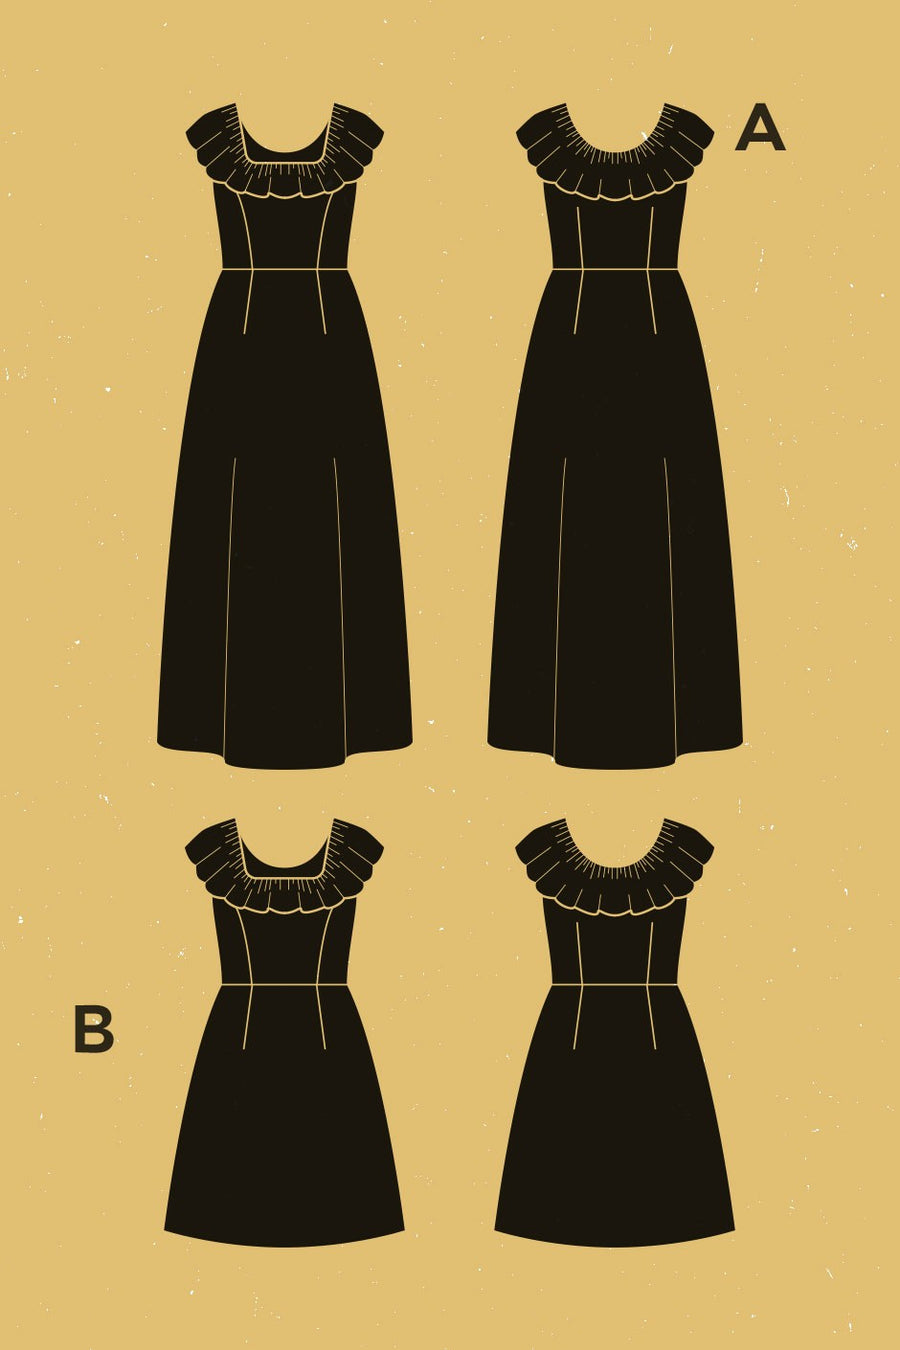 Coquelicot Dress Pattern | Patron de Robe Coquelicot | Deer & Doe